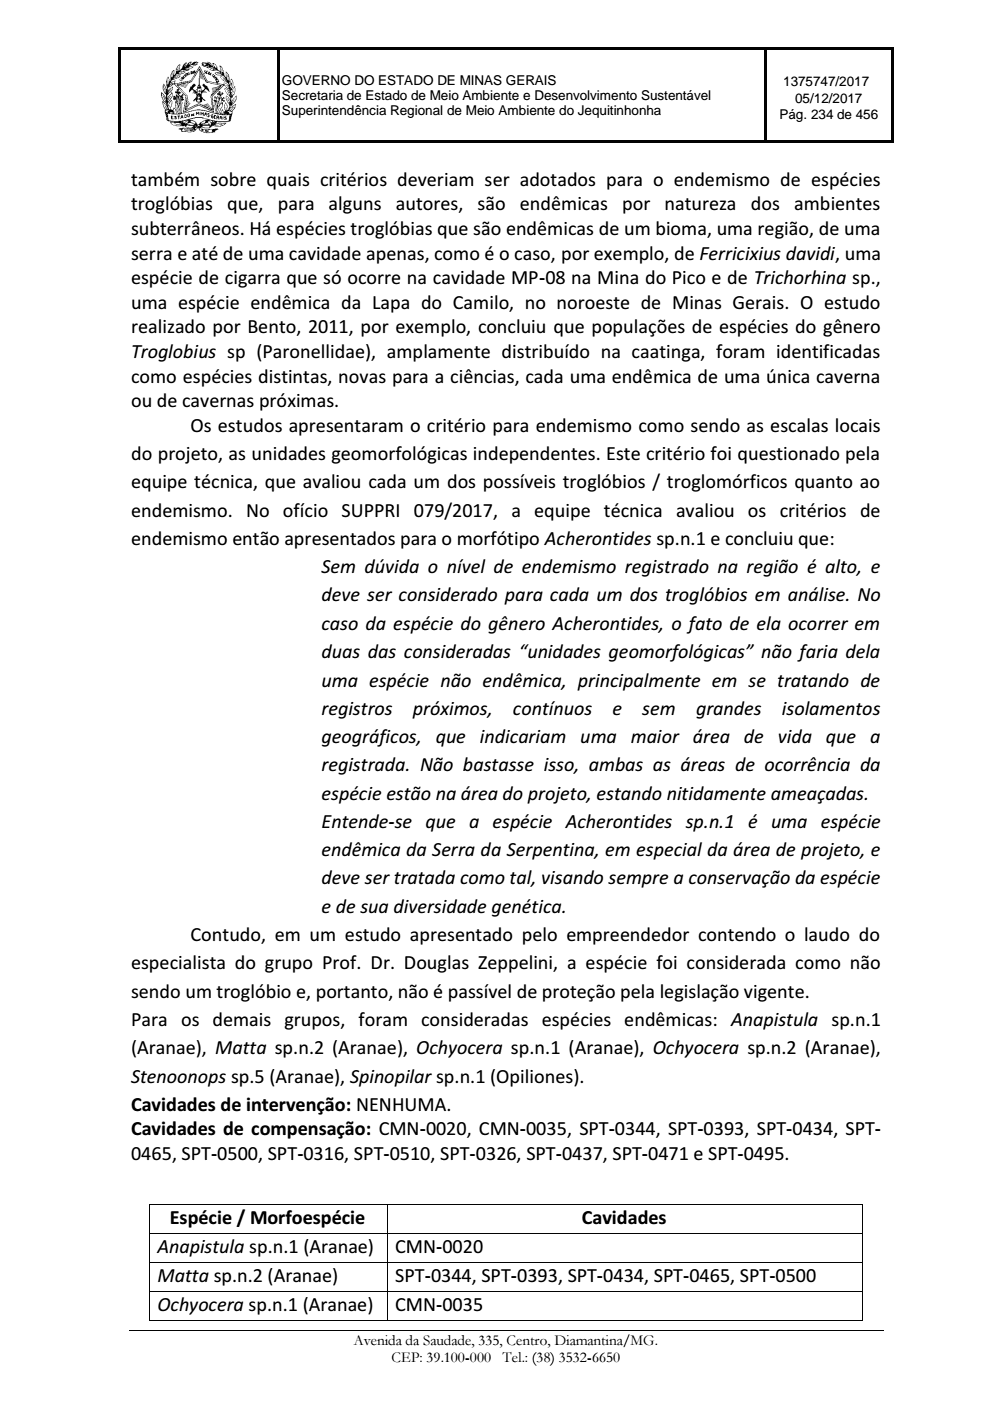 Page 234 from Parecer único da Secretaria de estado de Meio Ambiente e Desenvolvimento Sustentável (SEMAD)